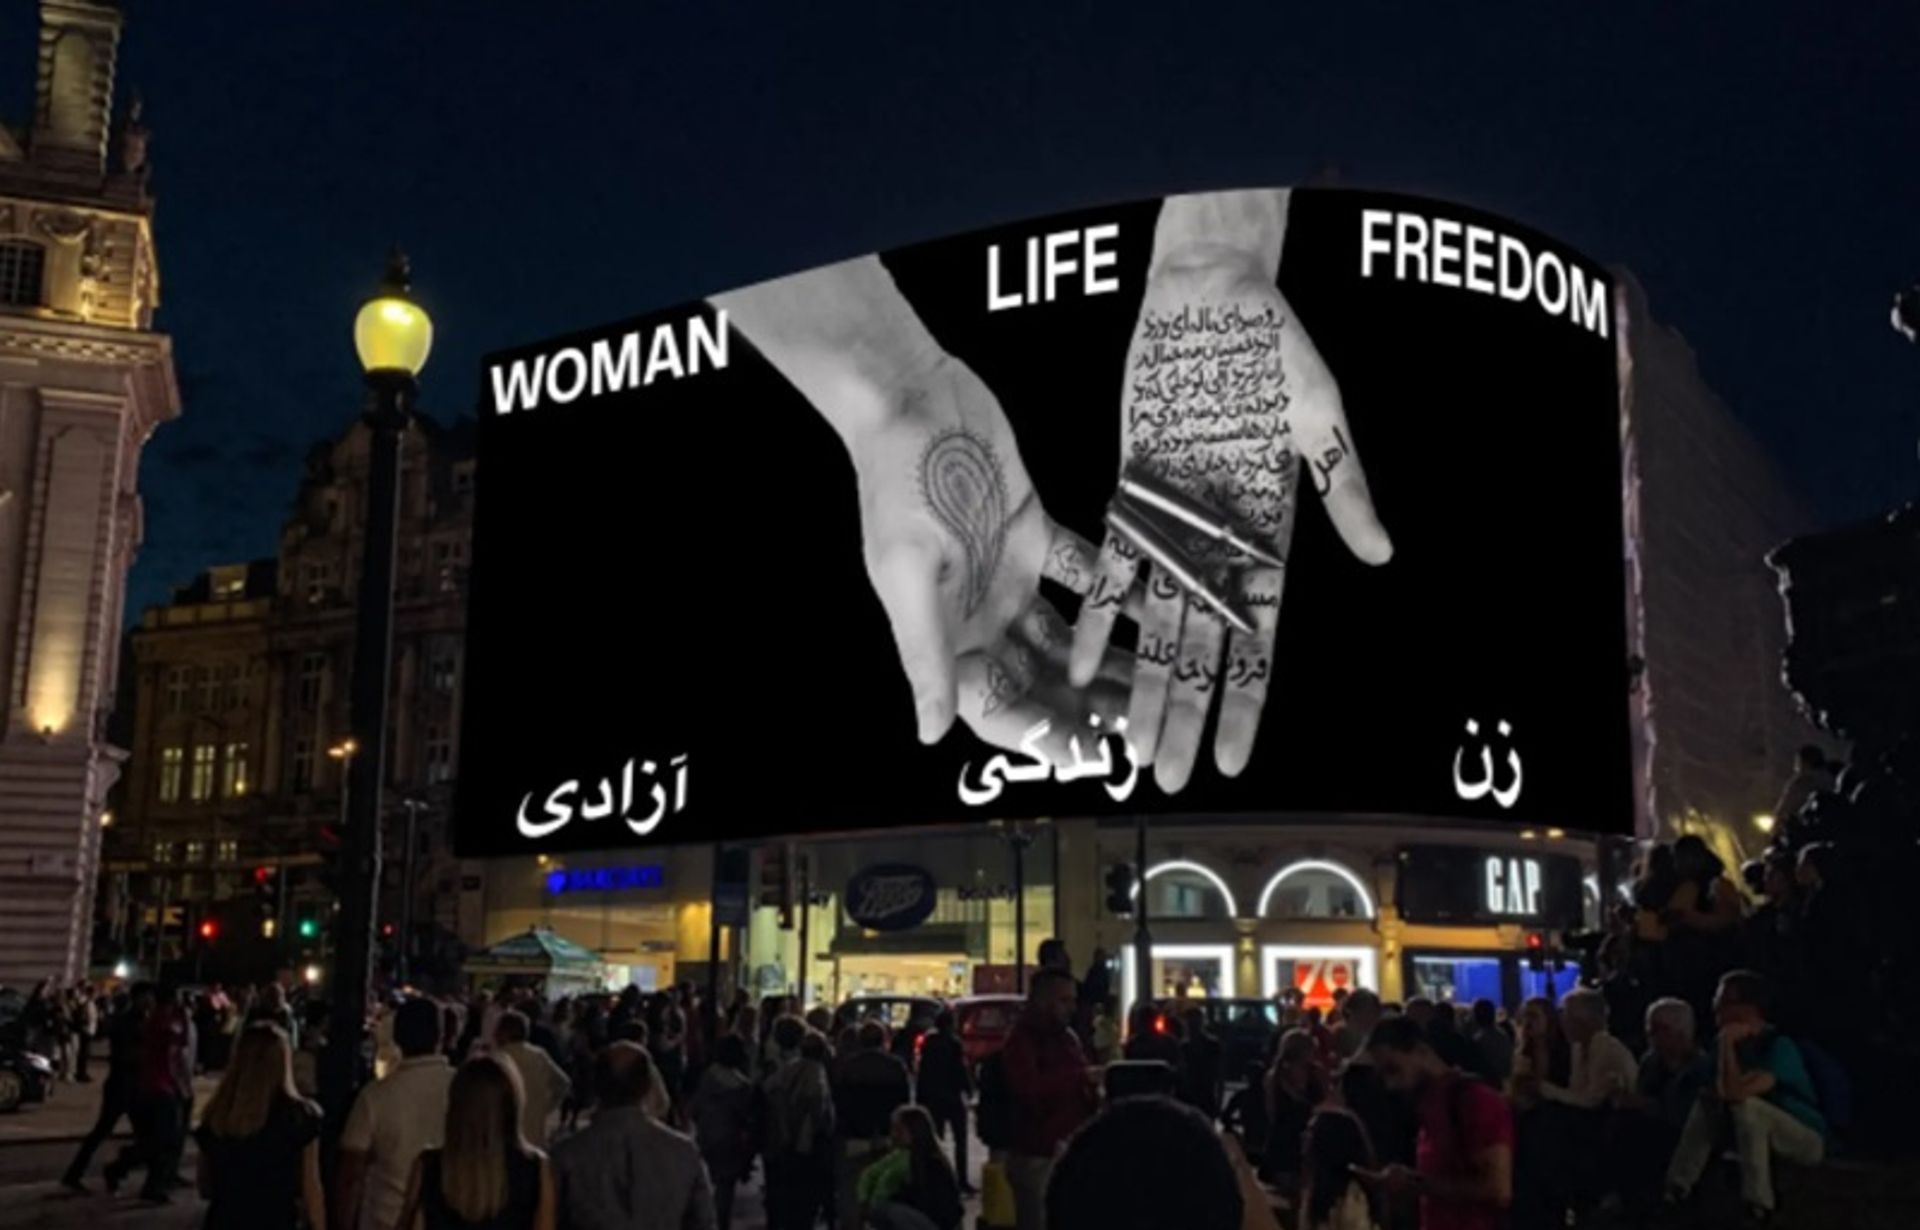 מפגינים התאספו אמש לתמיכה בנשות איראן בכיכר פיקדילי בלונדון, שם הוקרנה 'חופש חיים האישה' של שירין נשאט.

באדיבות Circa והאמן